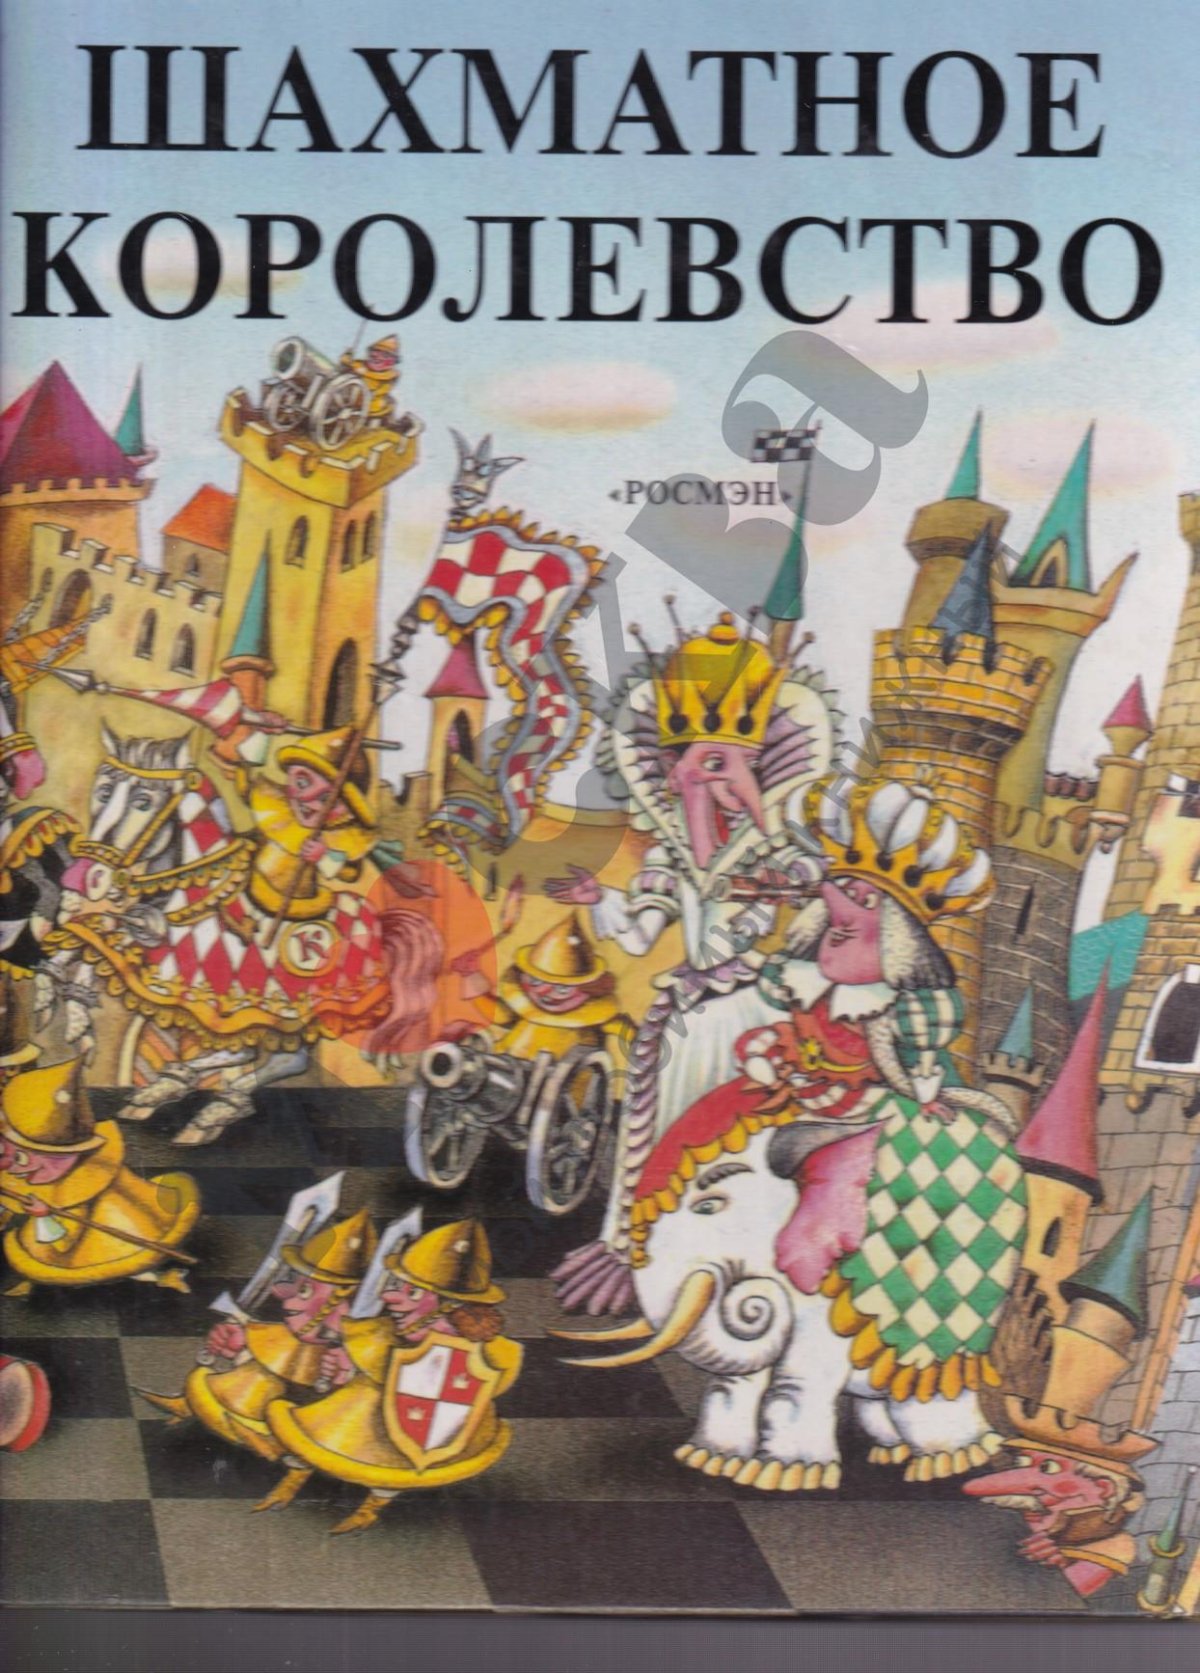 Детская книга про шахматное королевство